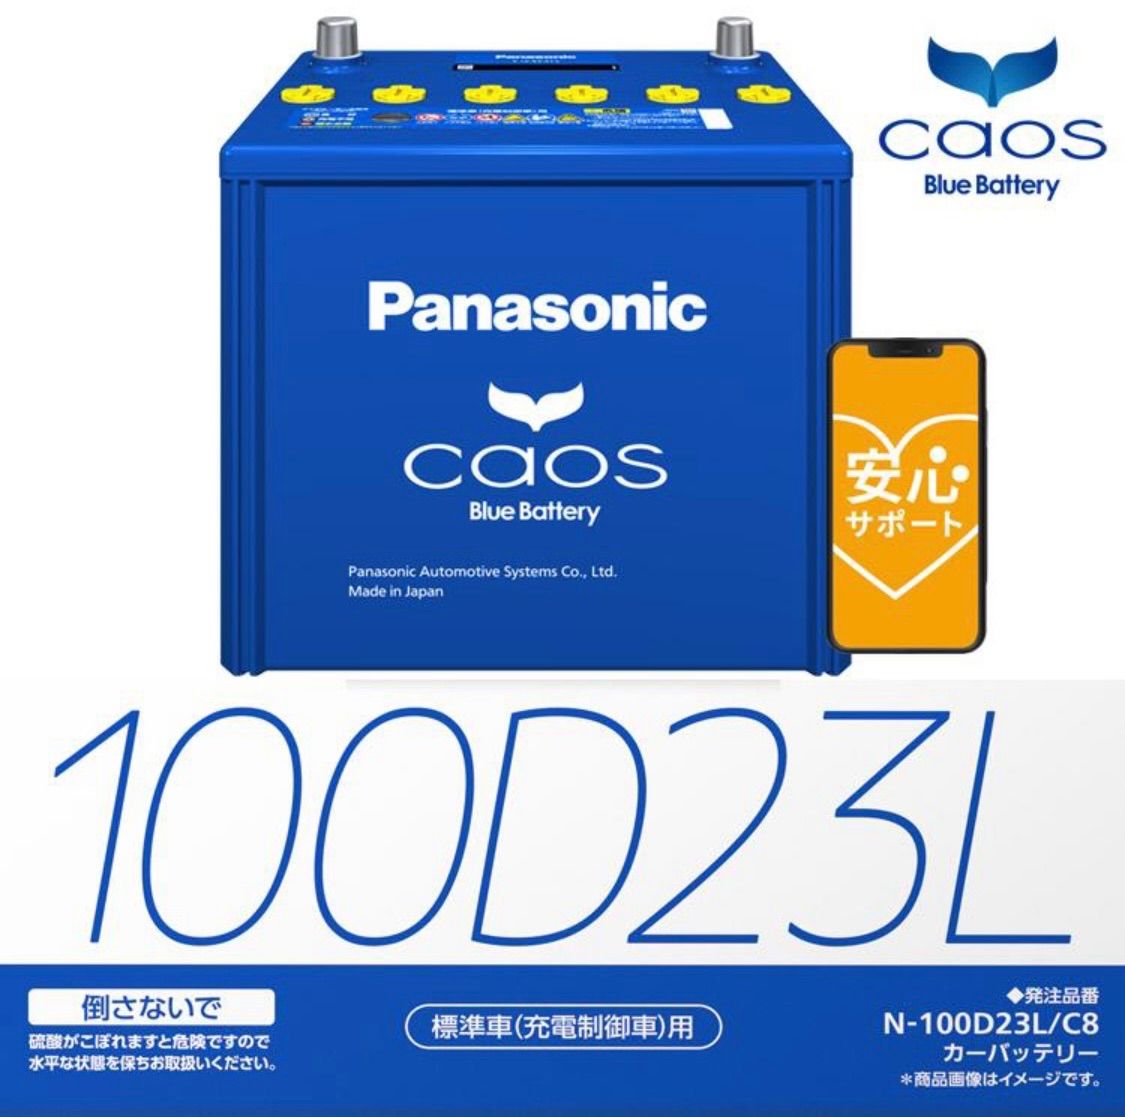 廃バッテリー無料回収 パナソニック カオス バッテリー 100d23l 